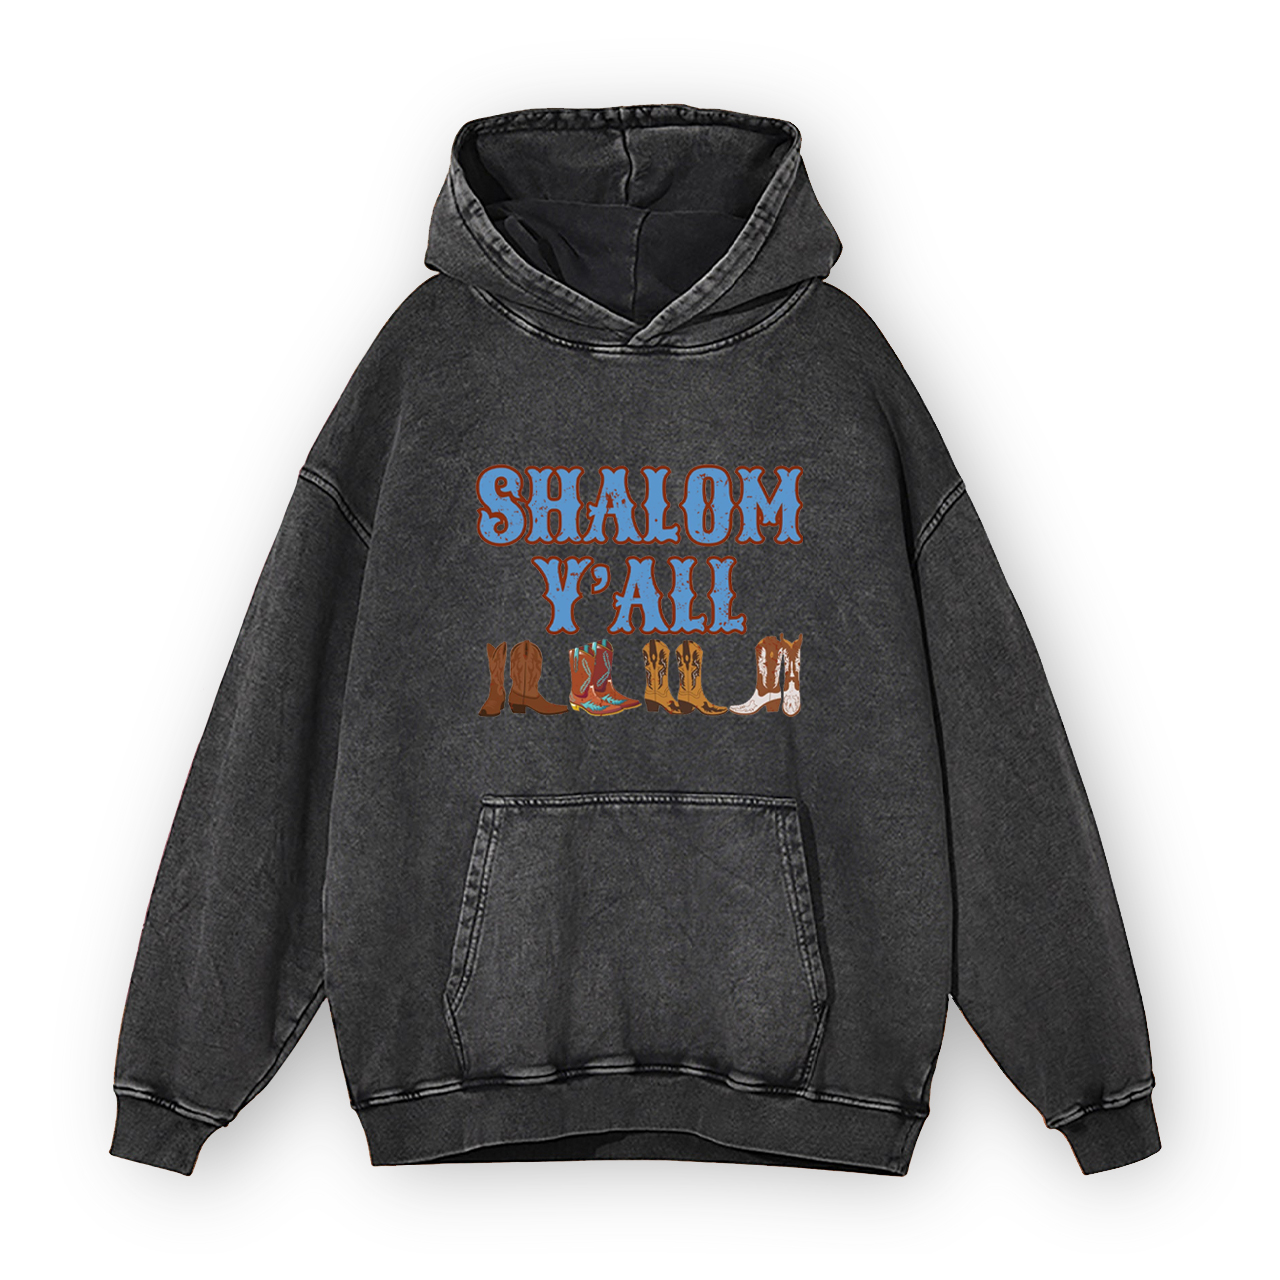 Shalom Y'all Western Flair Garment-Dye Hoodies